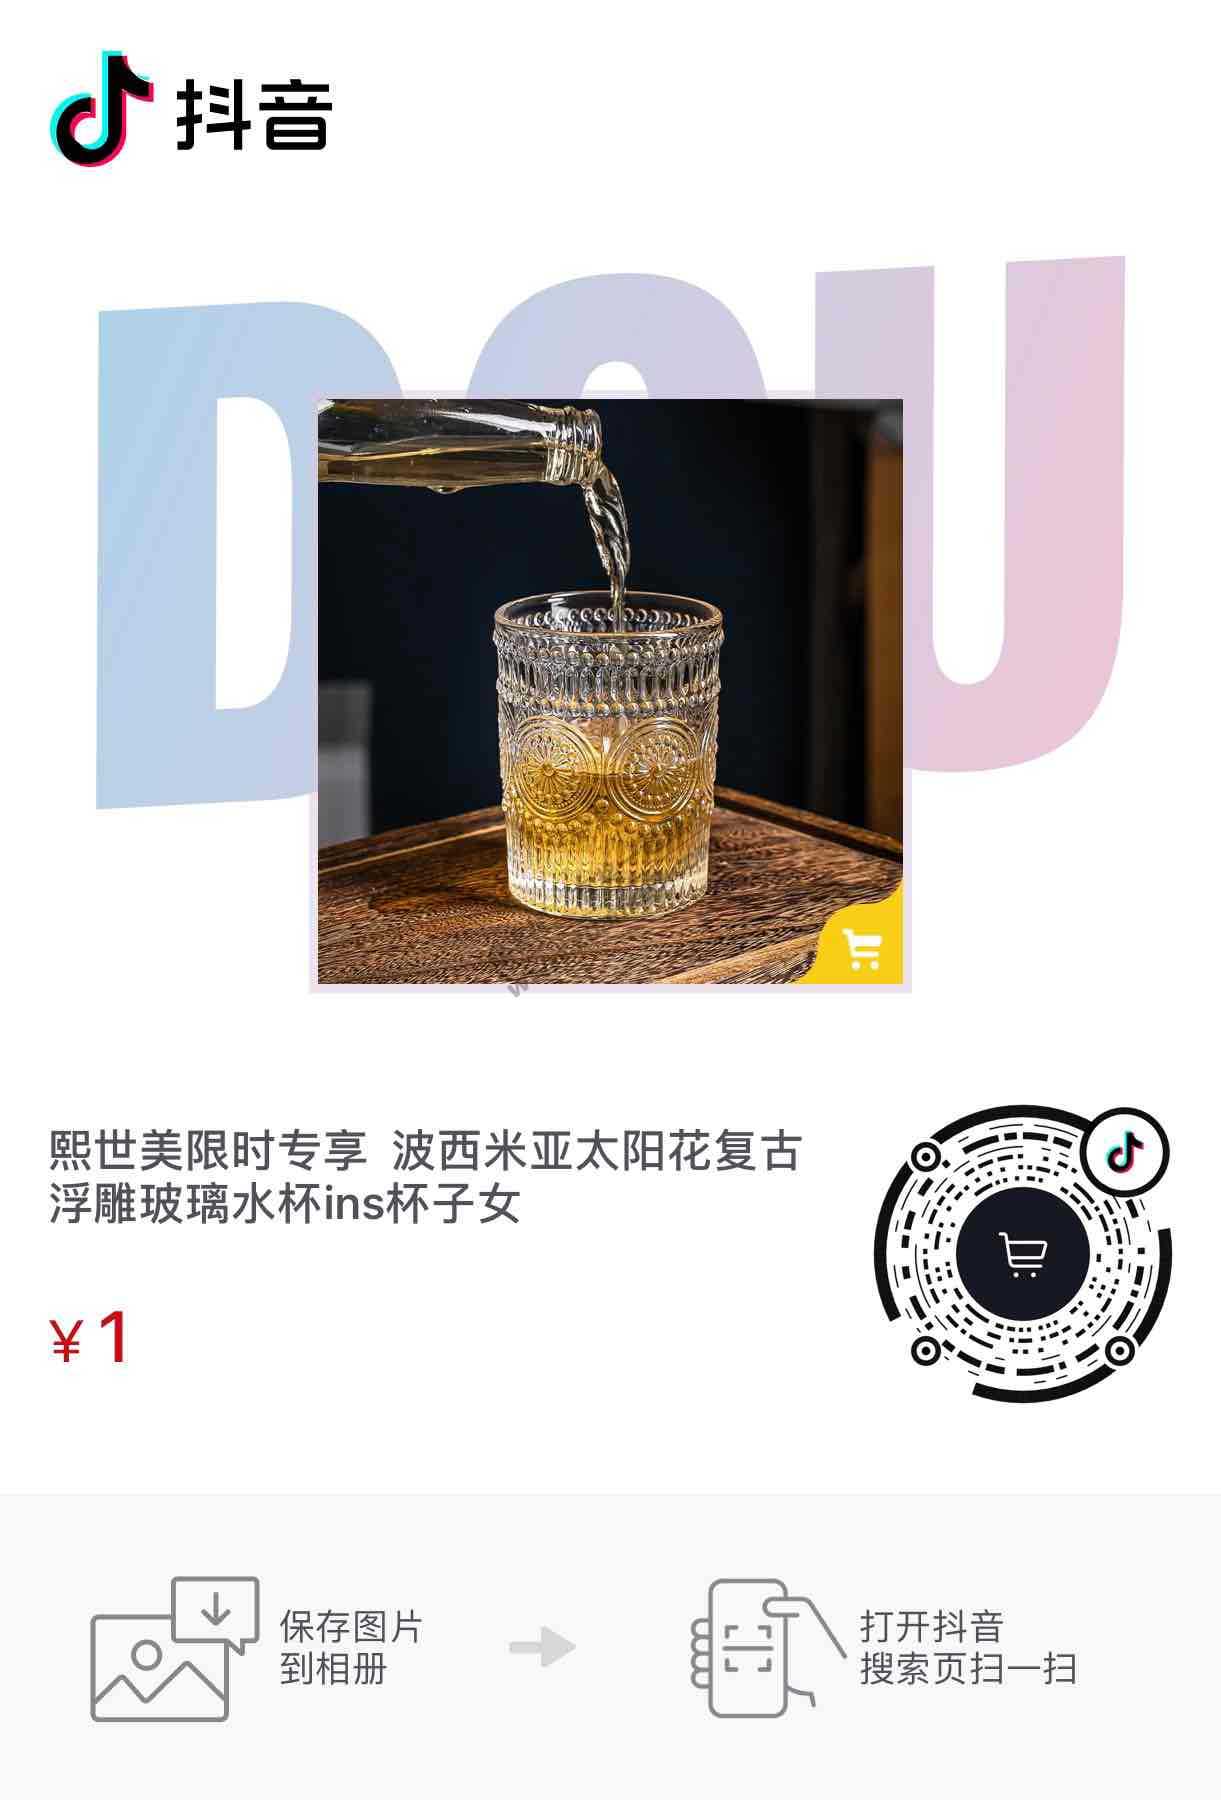 1元2个太阳杯-惠小助(52huixz.com)